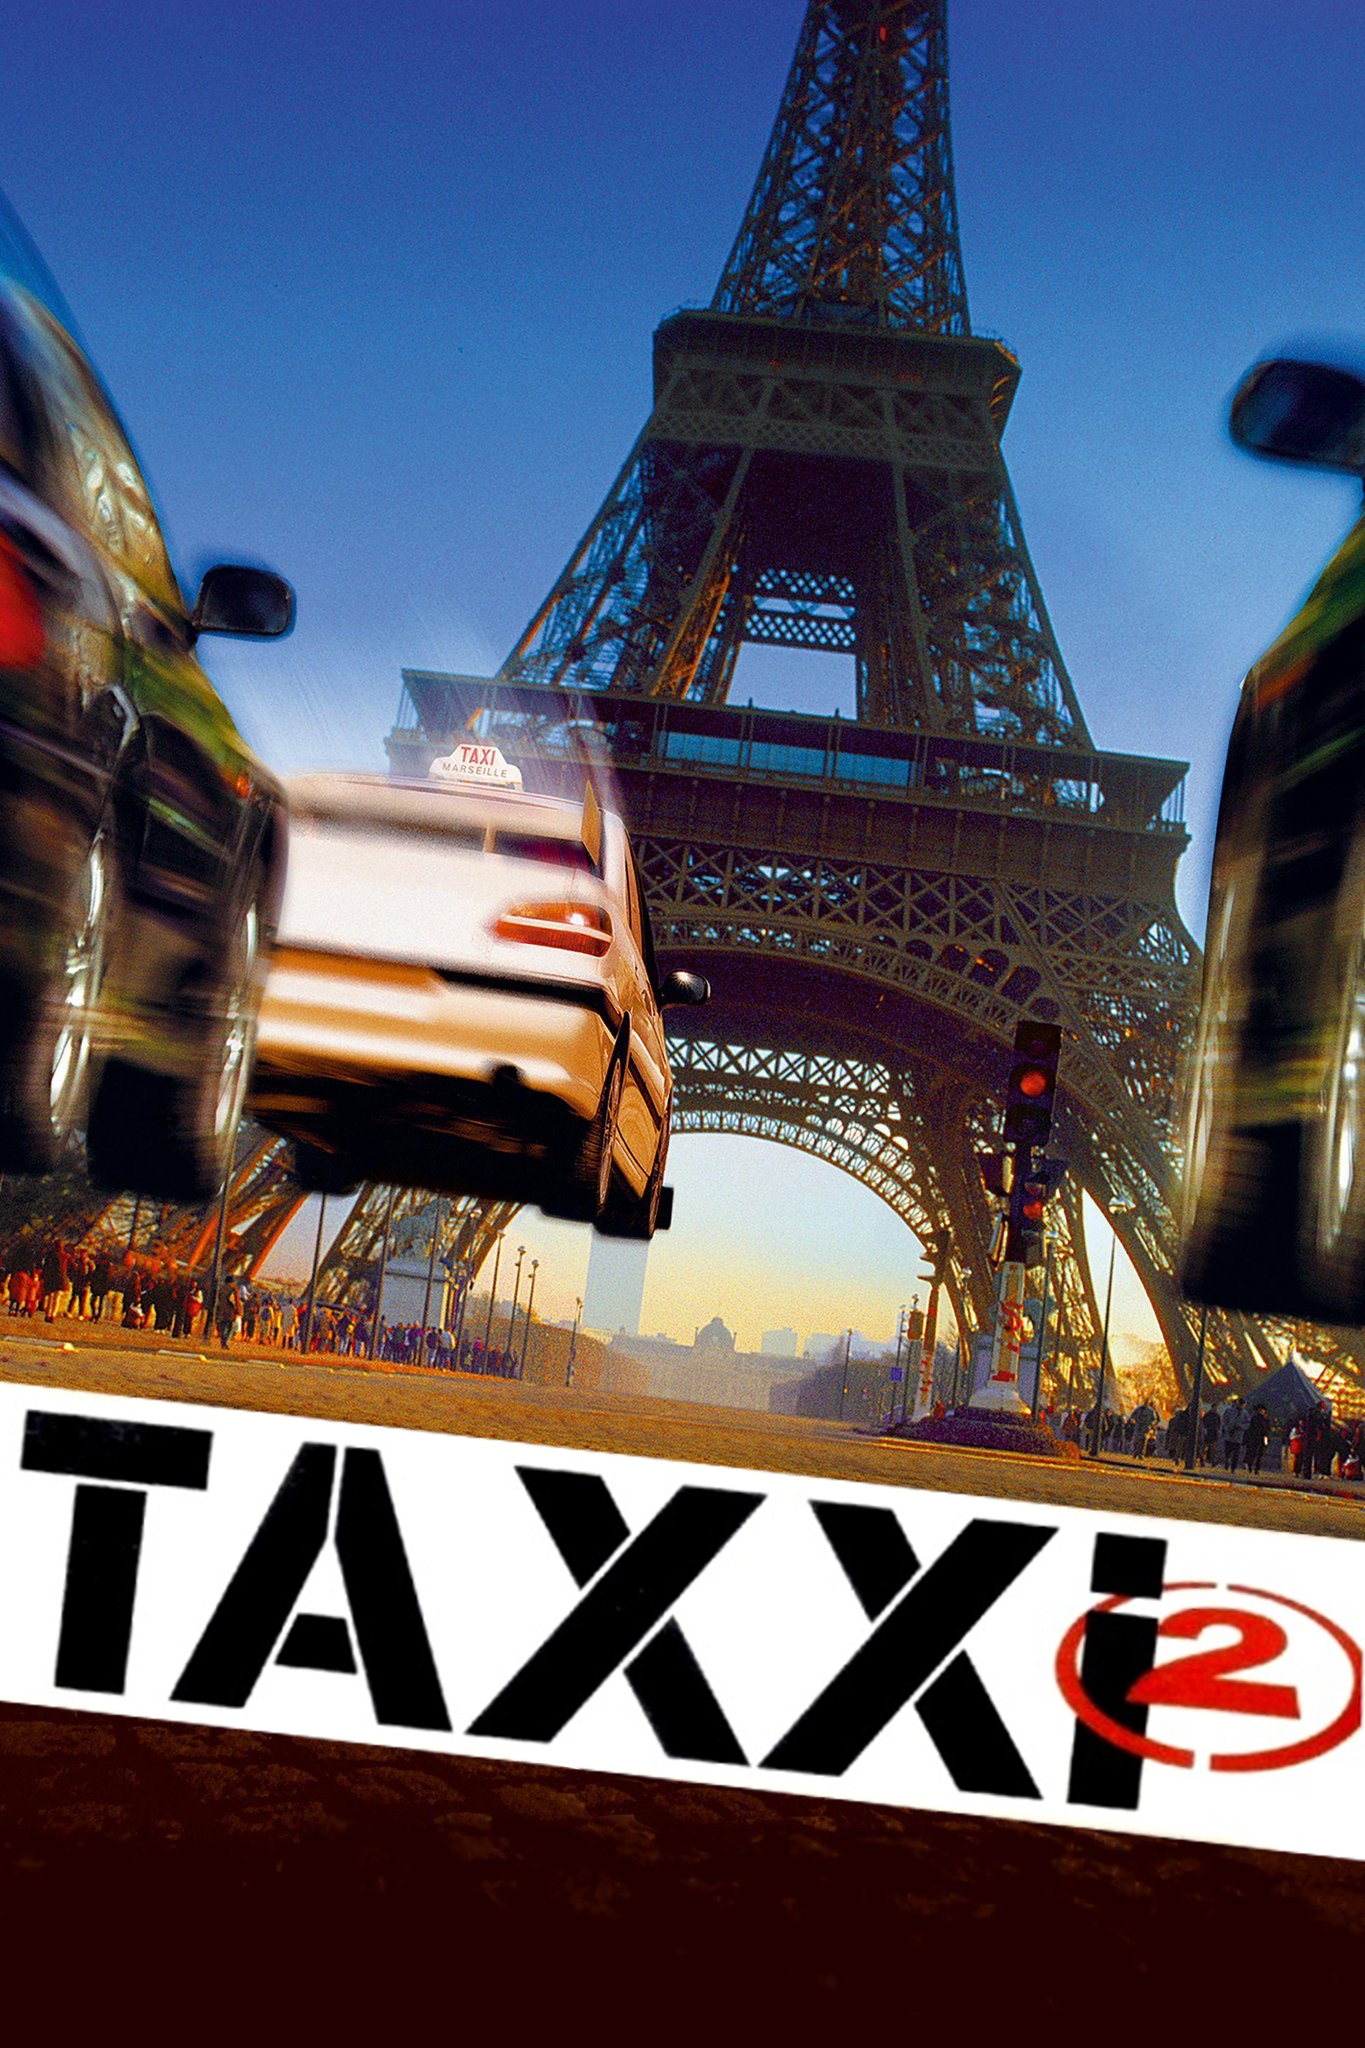 Taxxi 2 [HD] (2000)